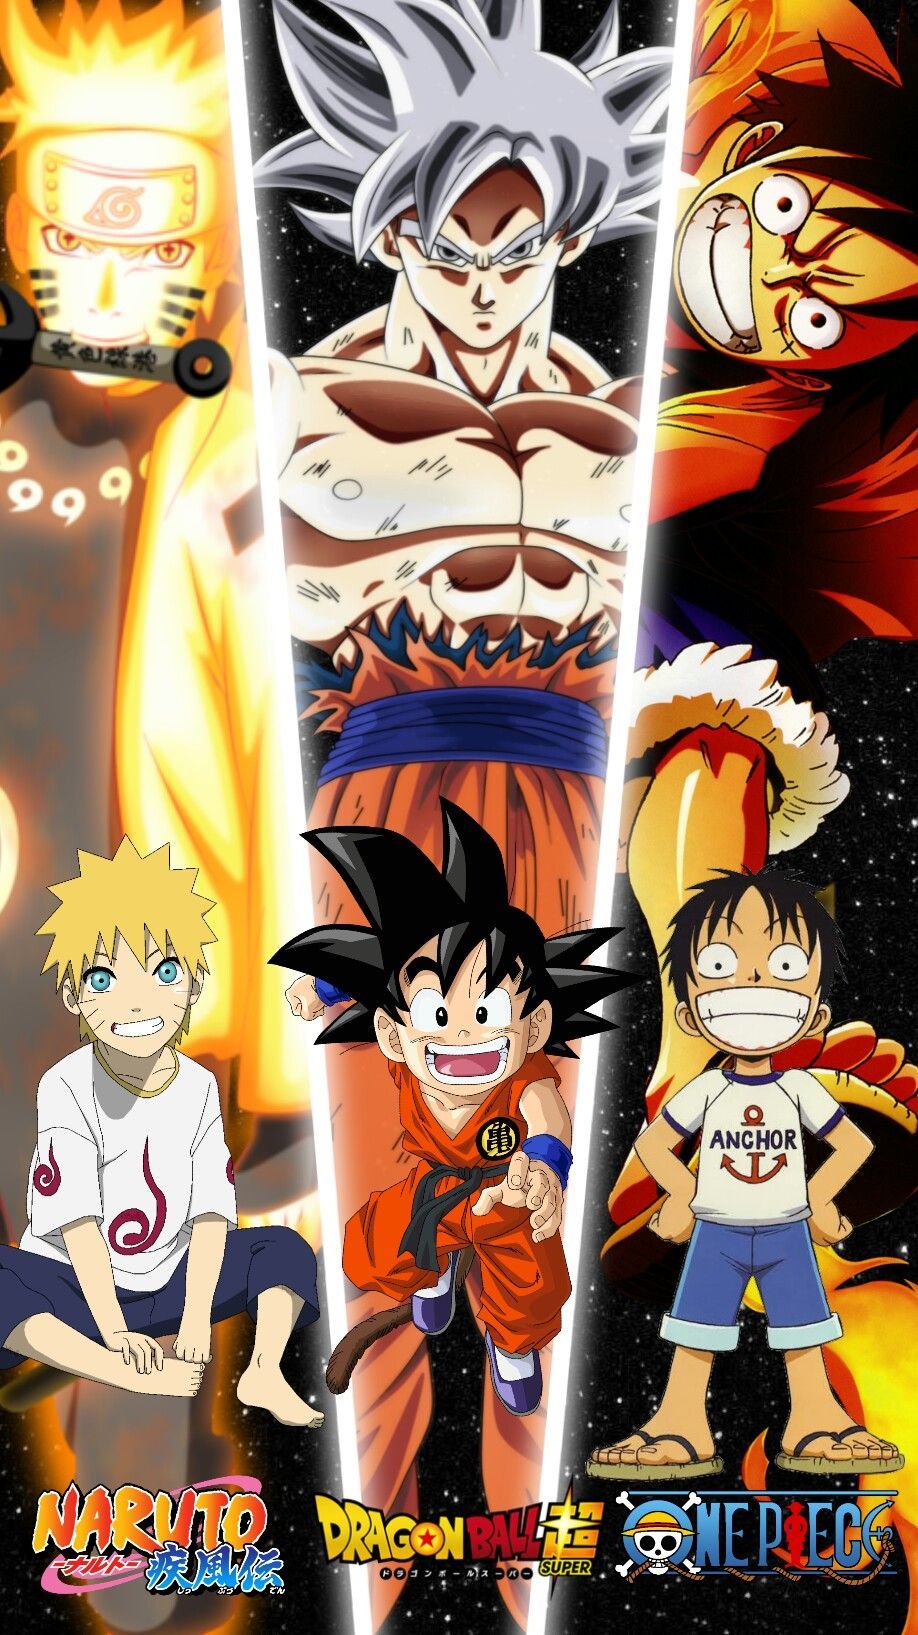 Chào mừng các fan của Goku và Luffy đến với Wallpaper Cave, nơi cung cấp những hình nền đẹp mắt nhất của cặp đôi siêu saiyajin và vua hải tặc. Thoải mái tải về và cài đặt những bức ảnh đầy màu sắc và sức mạnh này trên màn hình điện thoại hoặc máy tính của bạn để thể hiện tình yêu của mình đối với hai nhân vật này.